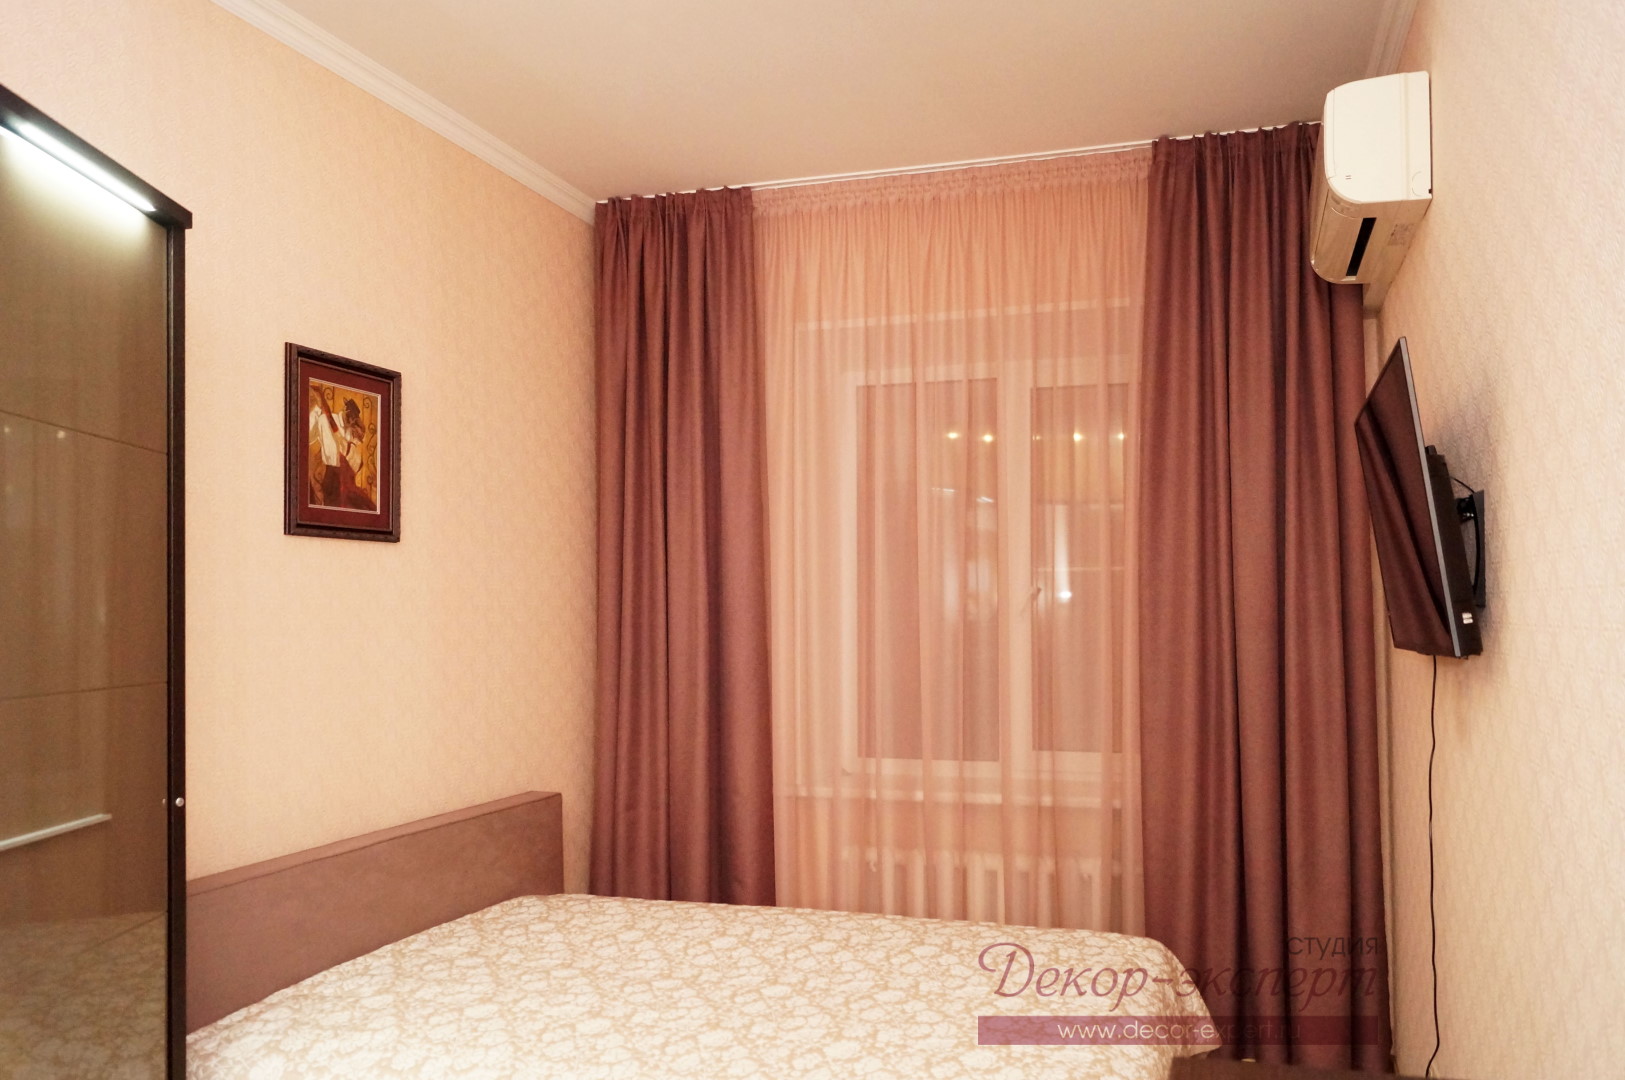 Общий вид спальни с лиловыми шторами в квартире в Тольятти.